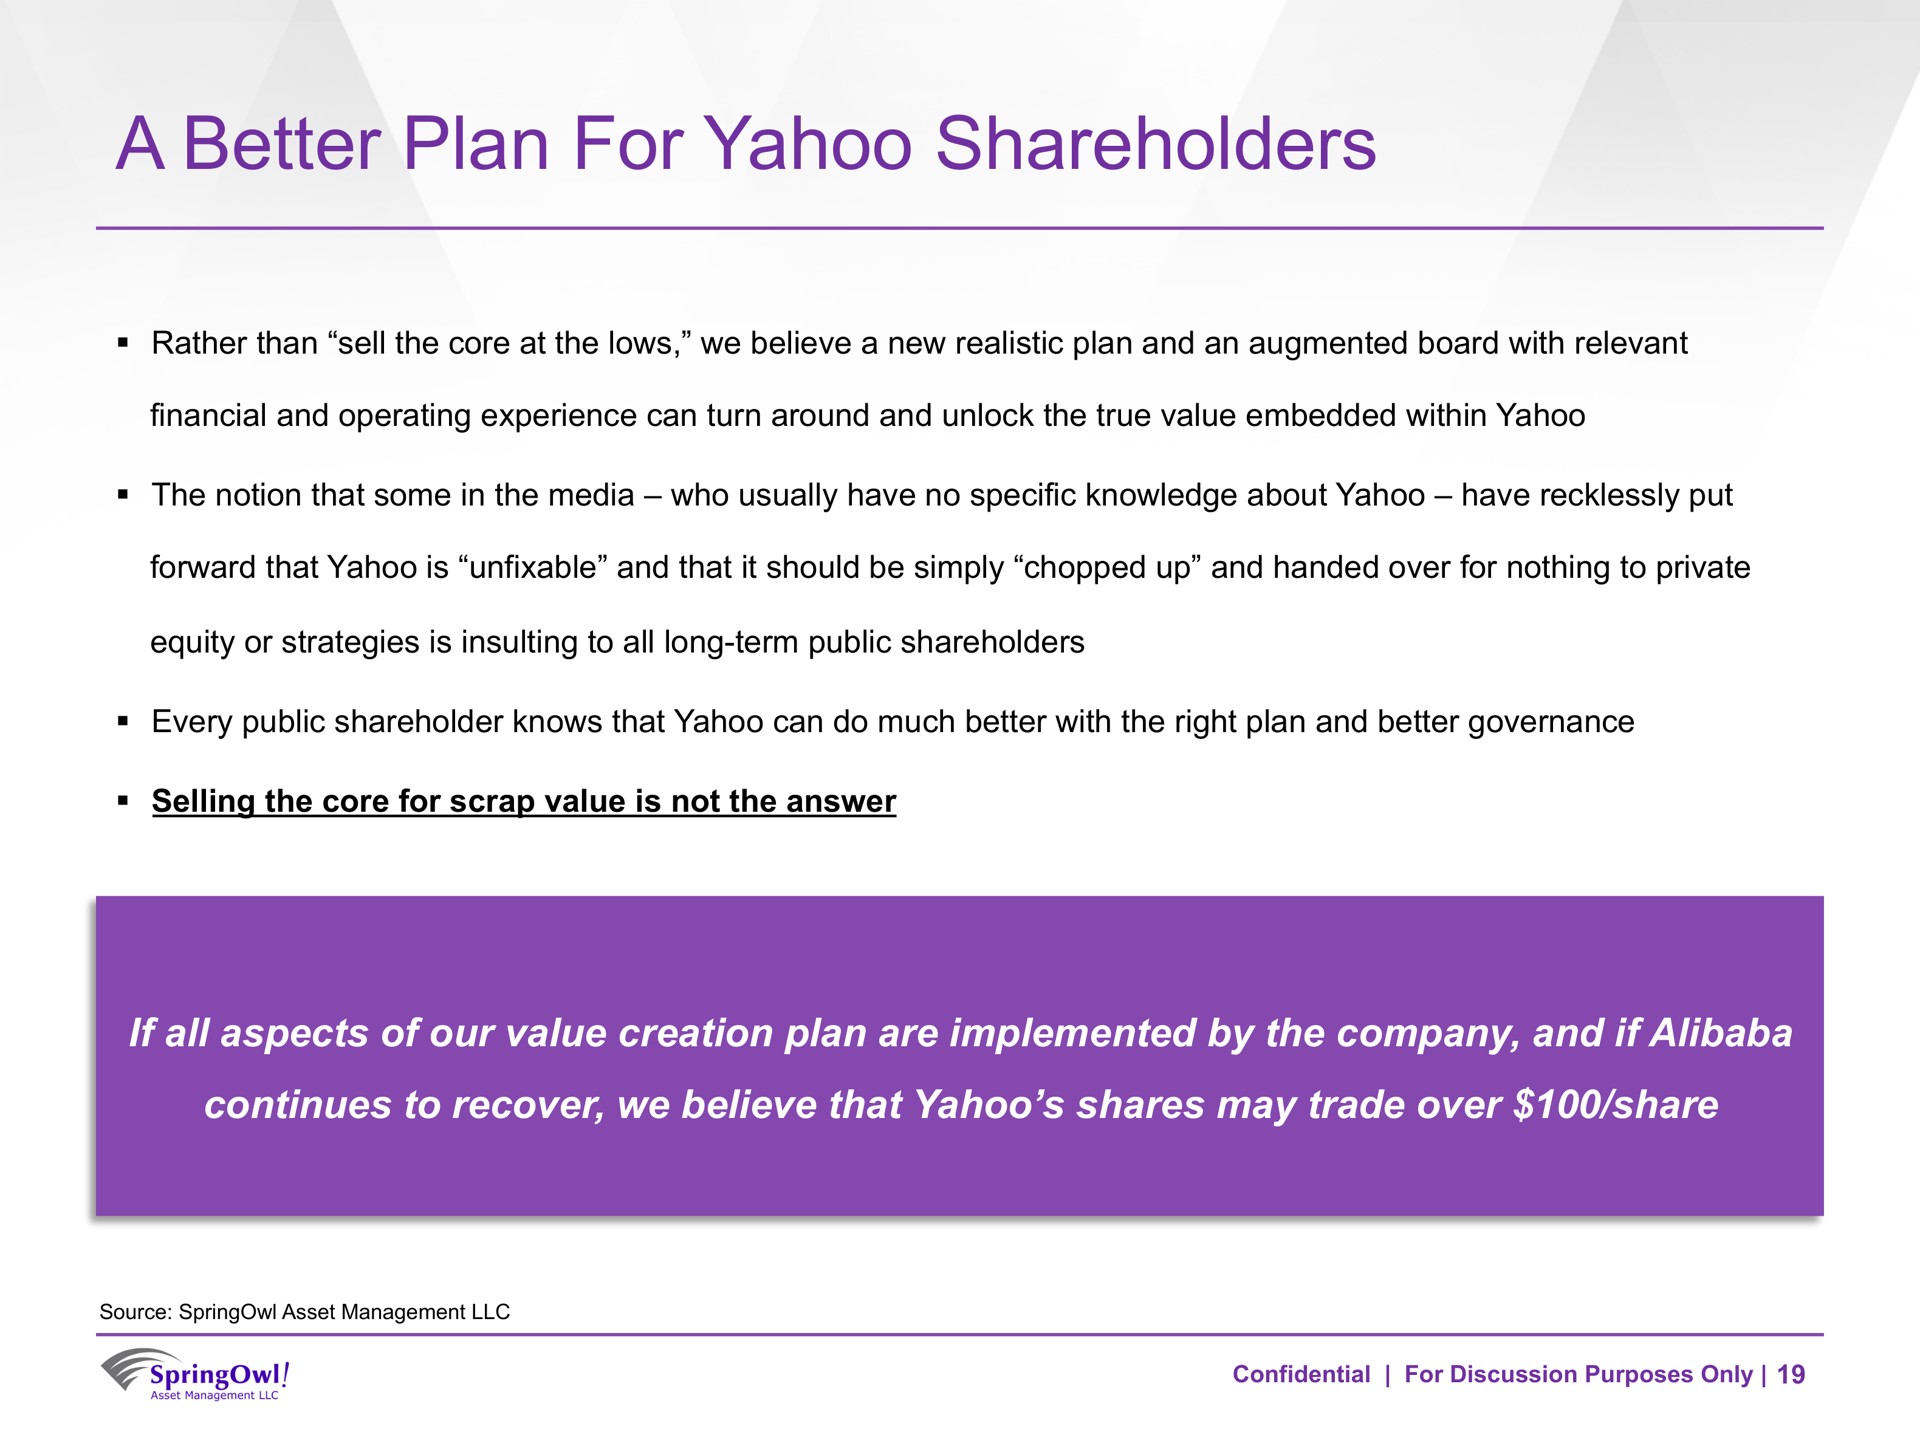 a better plan for yahoo shareholders | SpringOwl